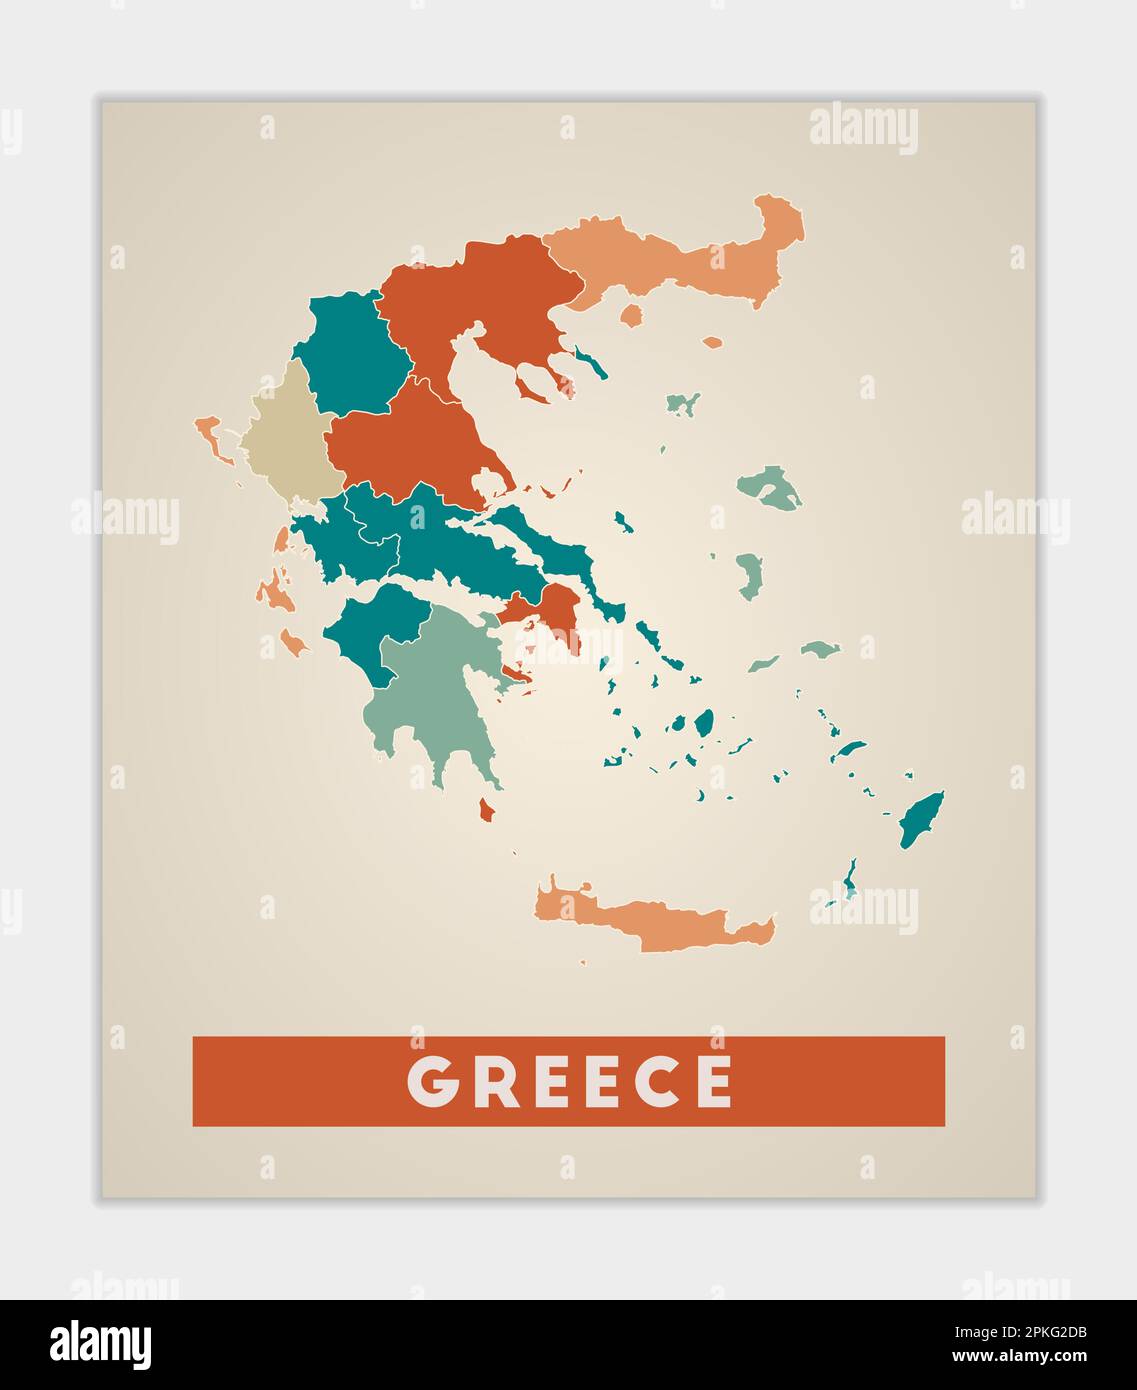 Affiche Grèce. Carte du pays avec des régions colorées. Forme de la Grèce avec le nom du pays. Illustration vectorielle artistique. Illustration de Vecteur